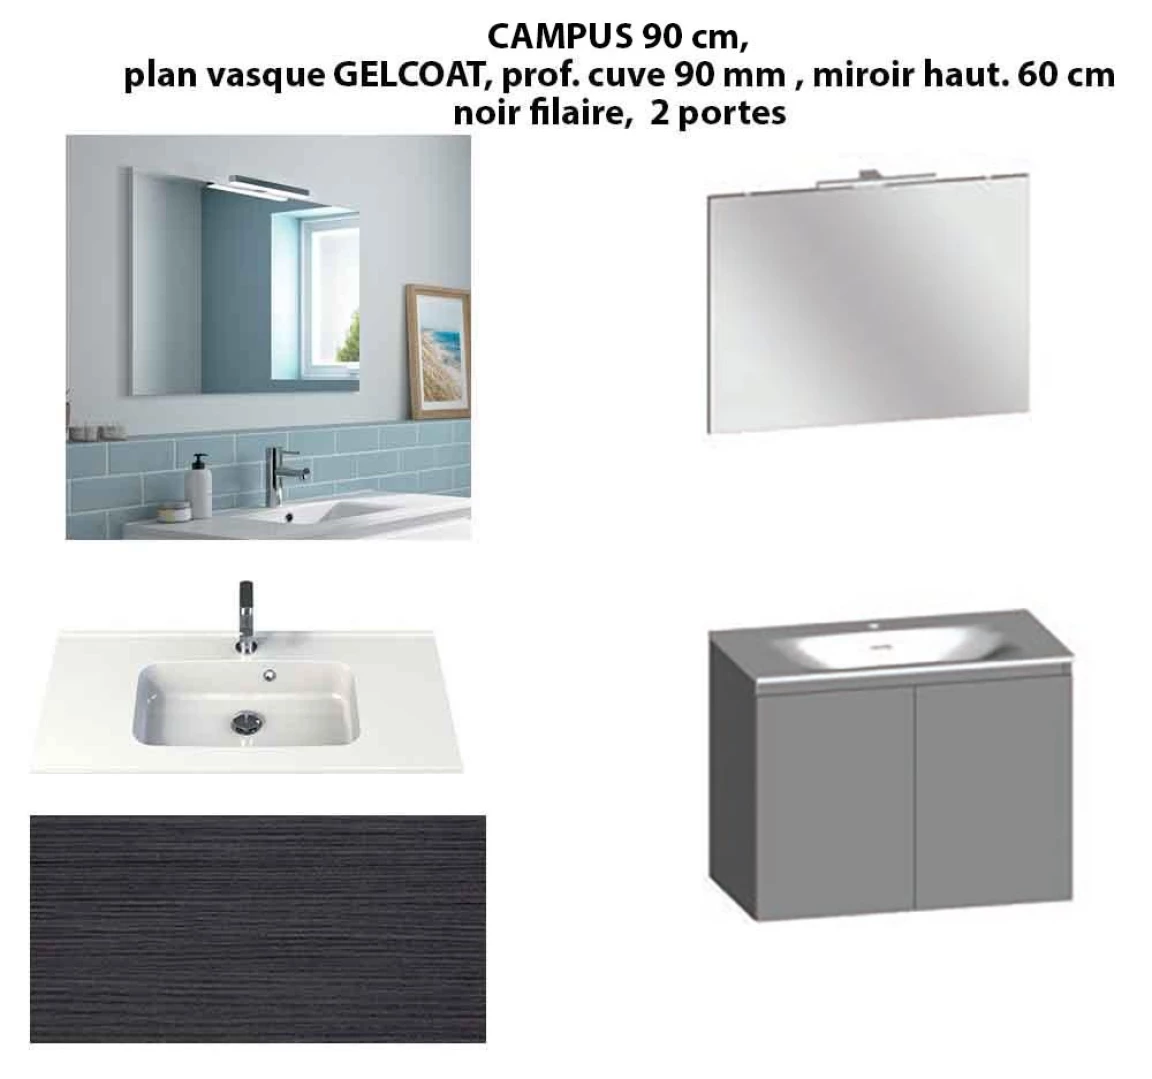 Ensemble meuble de salle de bain CAMPUS 90 cm, plan vasque GELCOAT, prof. cuve 90 mm, miroir hauteur 60 cm, noir filaire, 2 portes